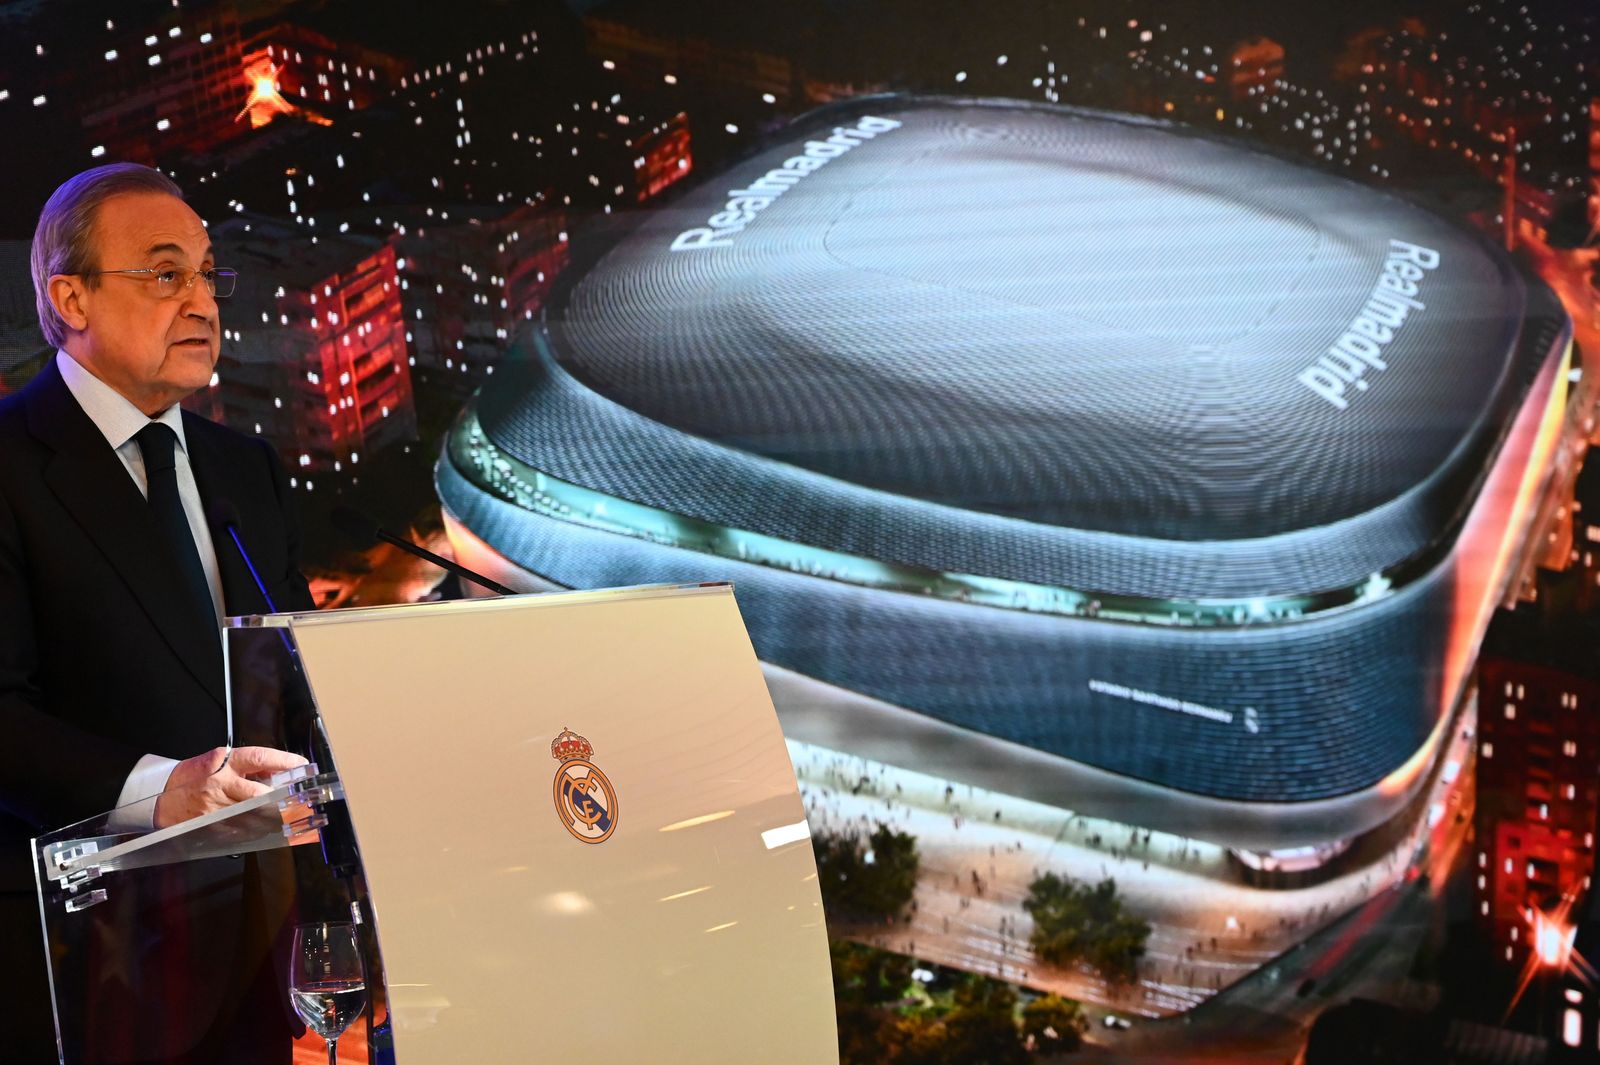 رئيس ريال مدريد فلورنتينو بيريز يحضر الكشف عن خطط إعادة تطوير ملعب سانتياغو برنابيو في 2 أبريل 2019 في مدريد. (تصوير غبريال بويز / وكالة الصحافة الفرنسية)